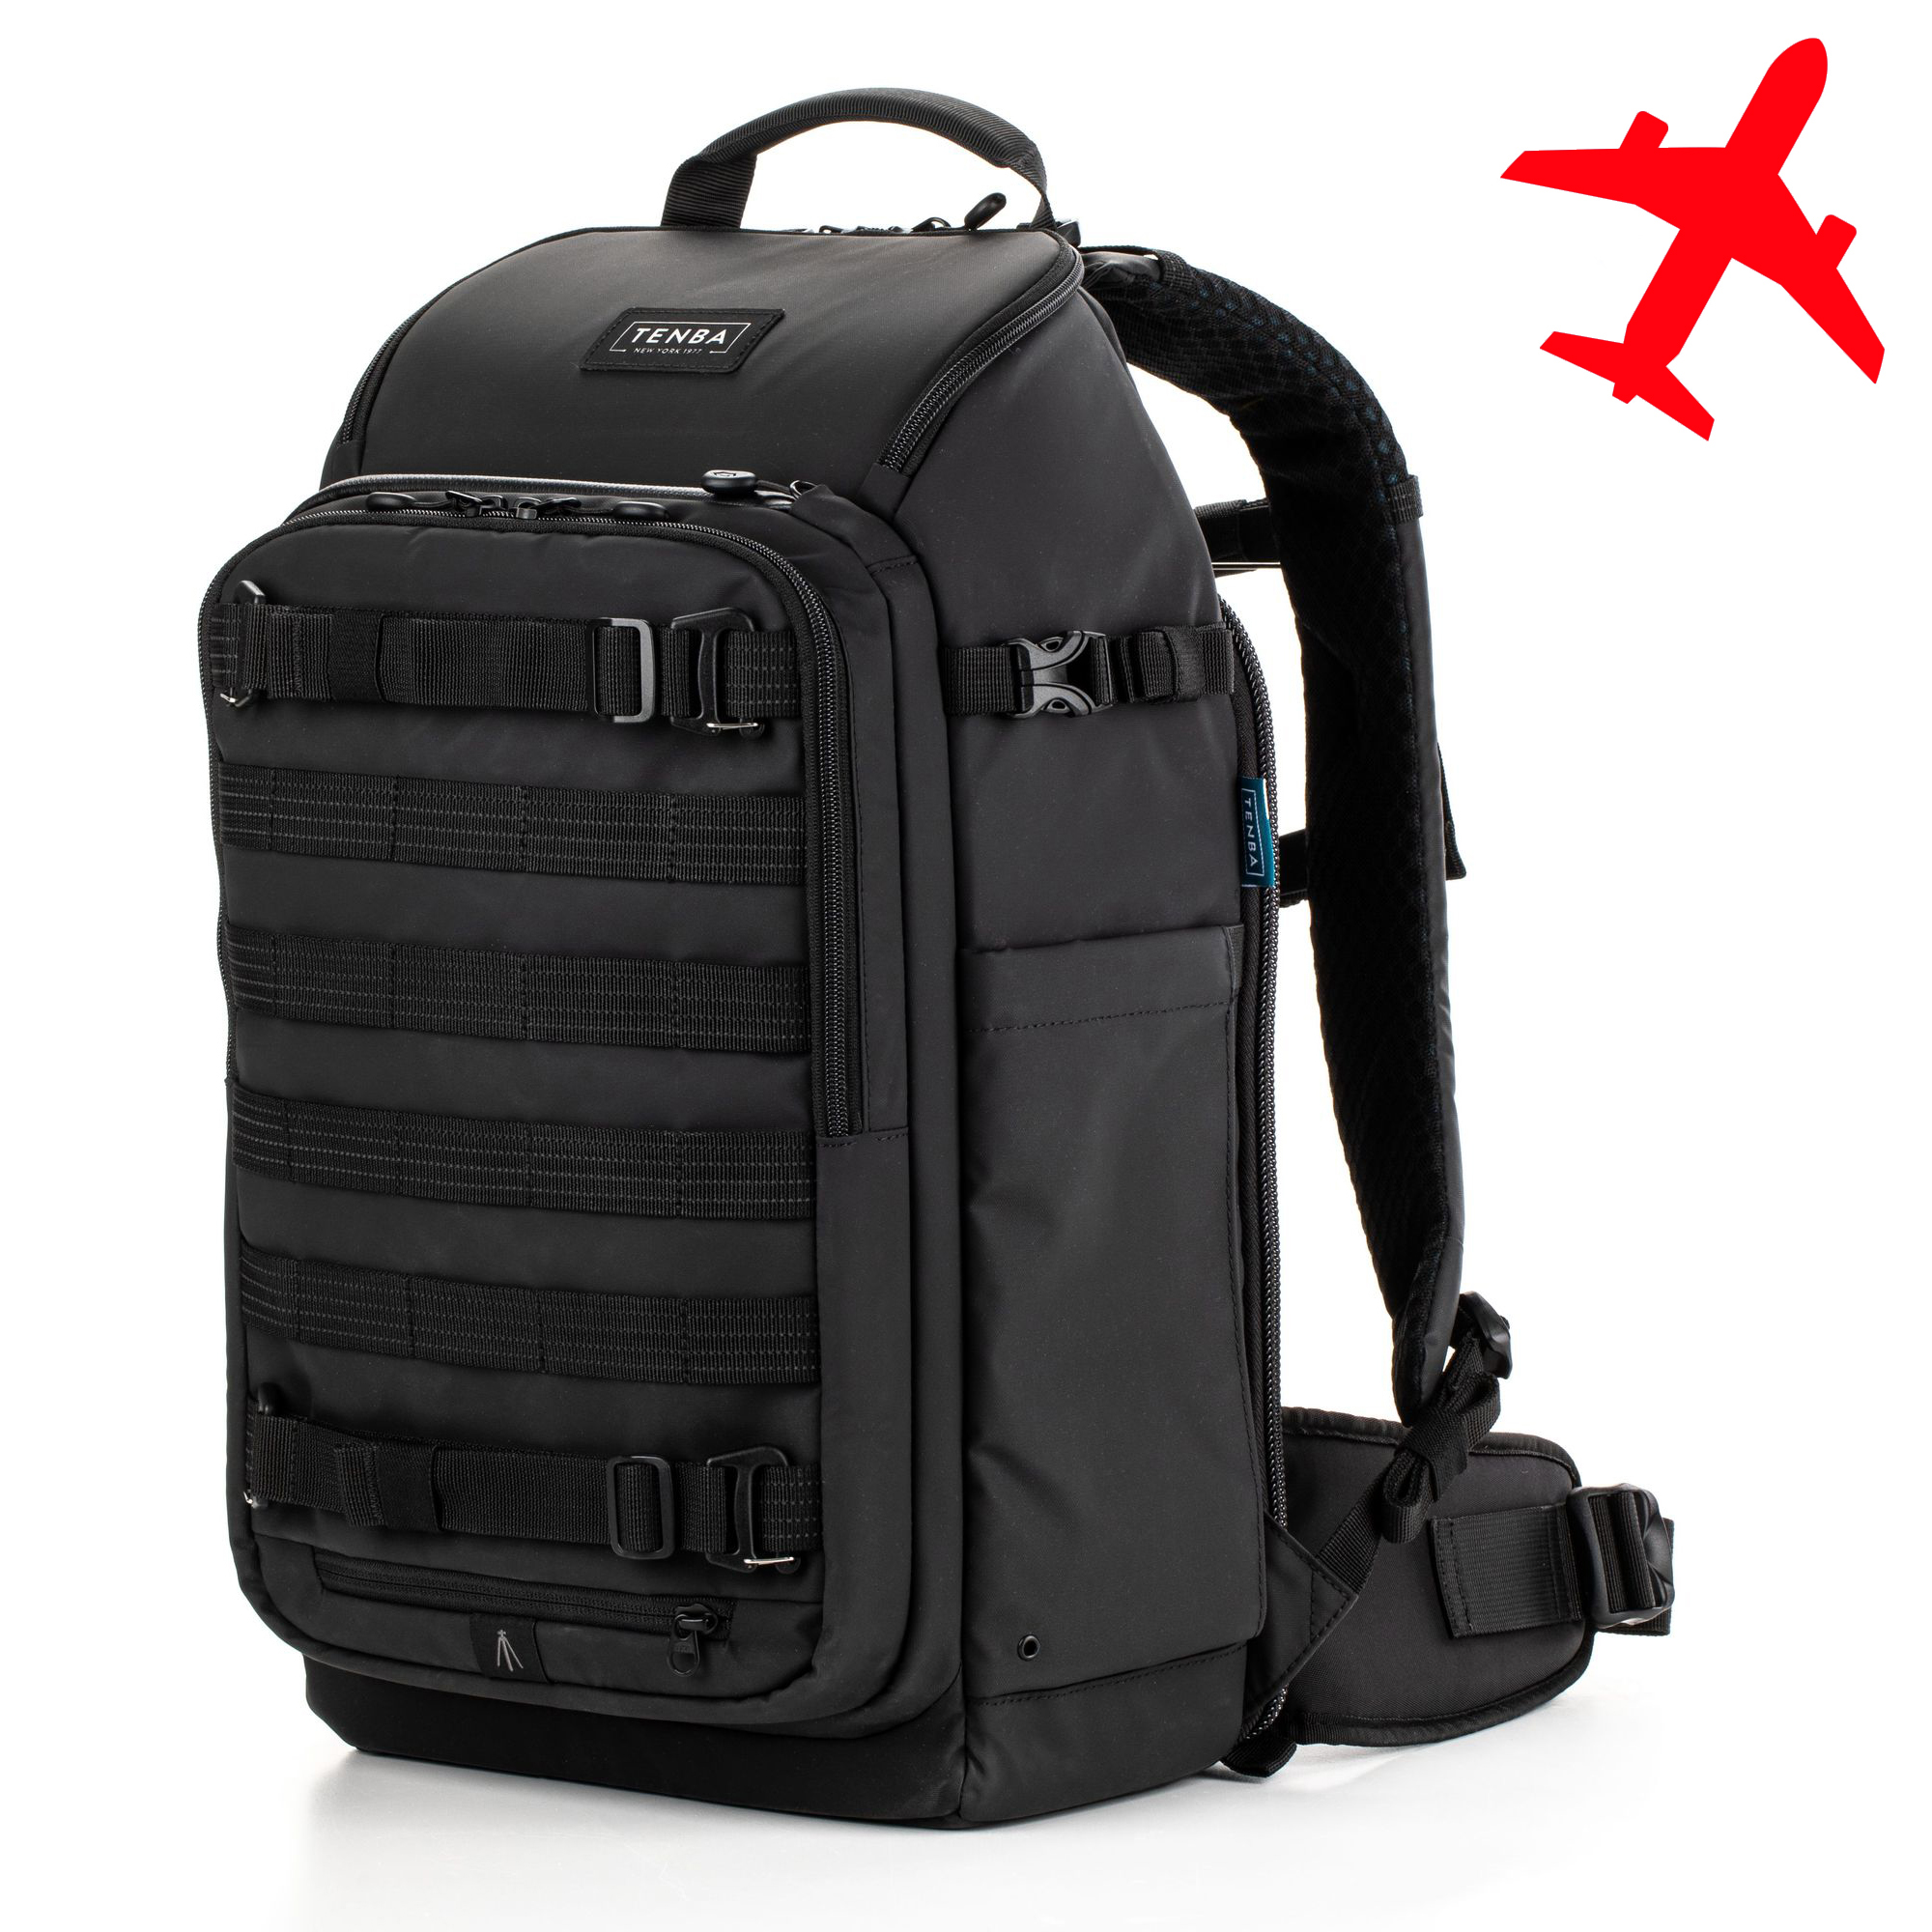 Рюкзак Tenba Axis v2 Tactical Backpack 20 black для фототехники